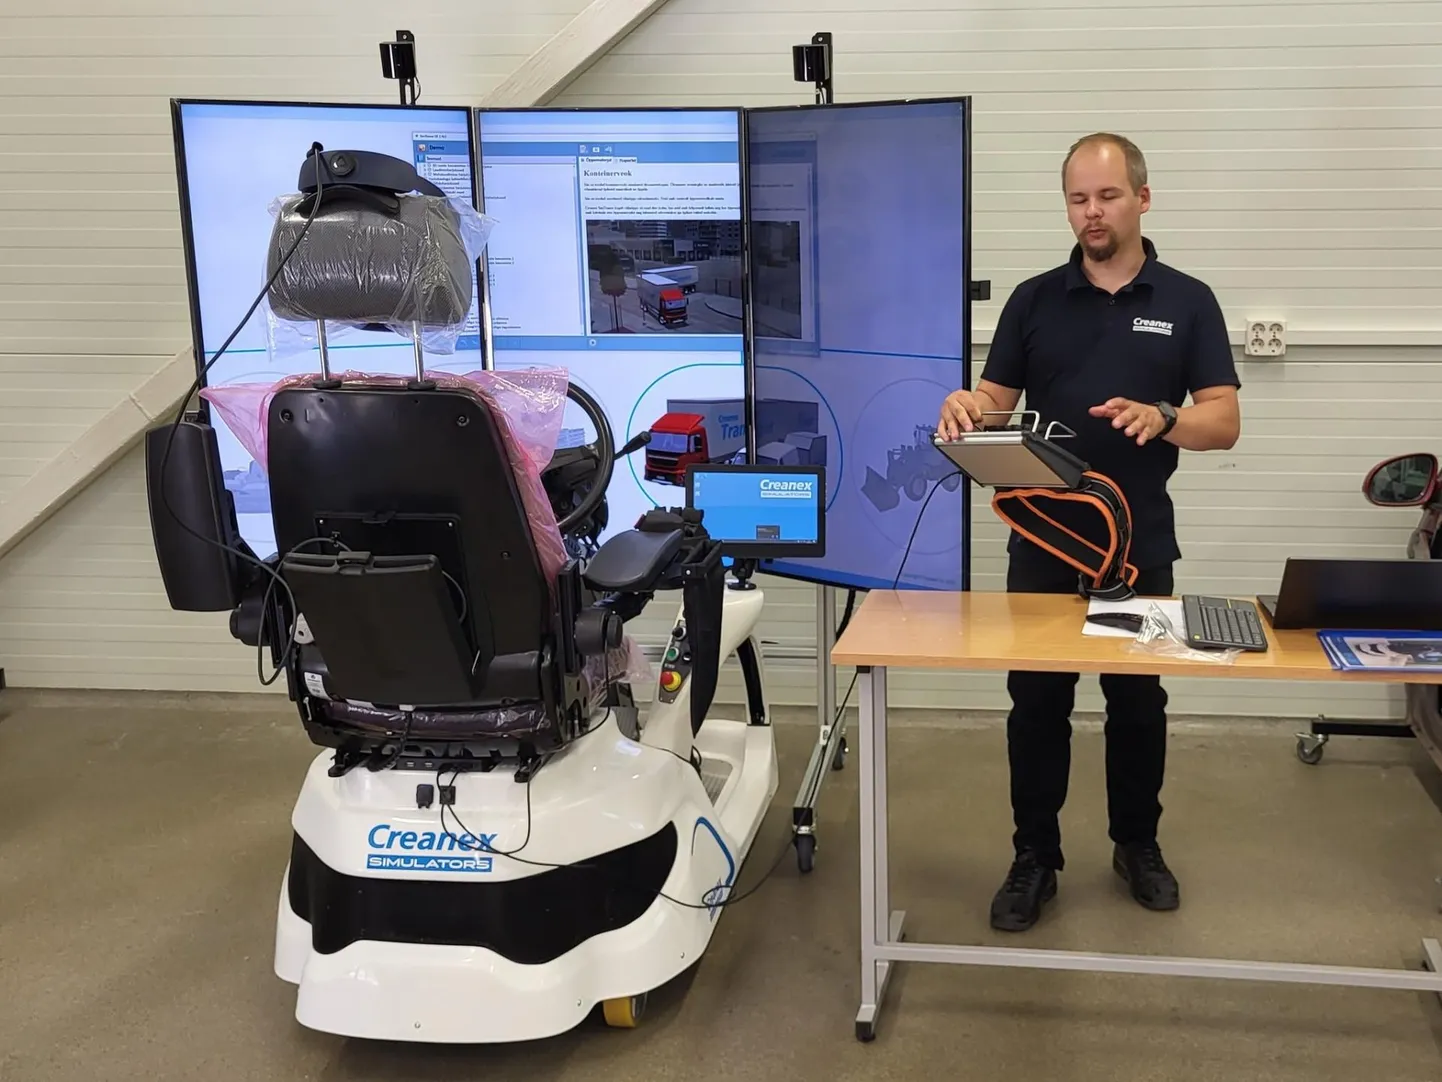 Viljandi kutseõppekeskus sai kätte Creanexi firma sõidukisimulaatori. Seda tutvustas õpetajatele Creanexi tootepealik Miikka Laaja.